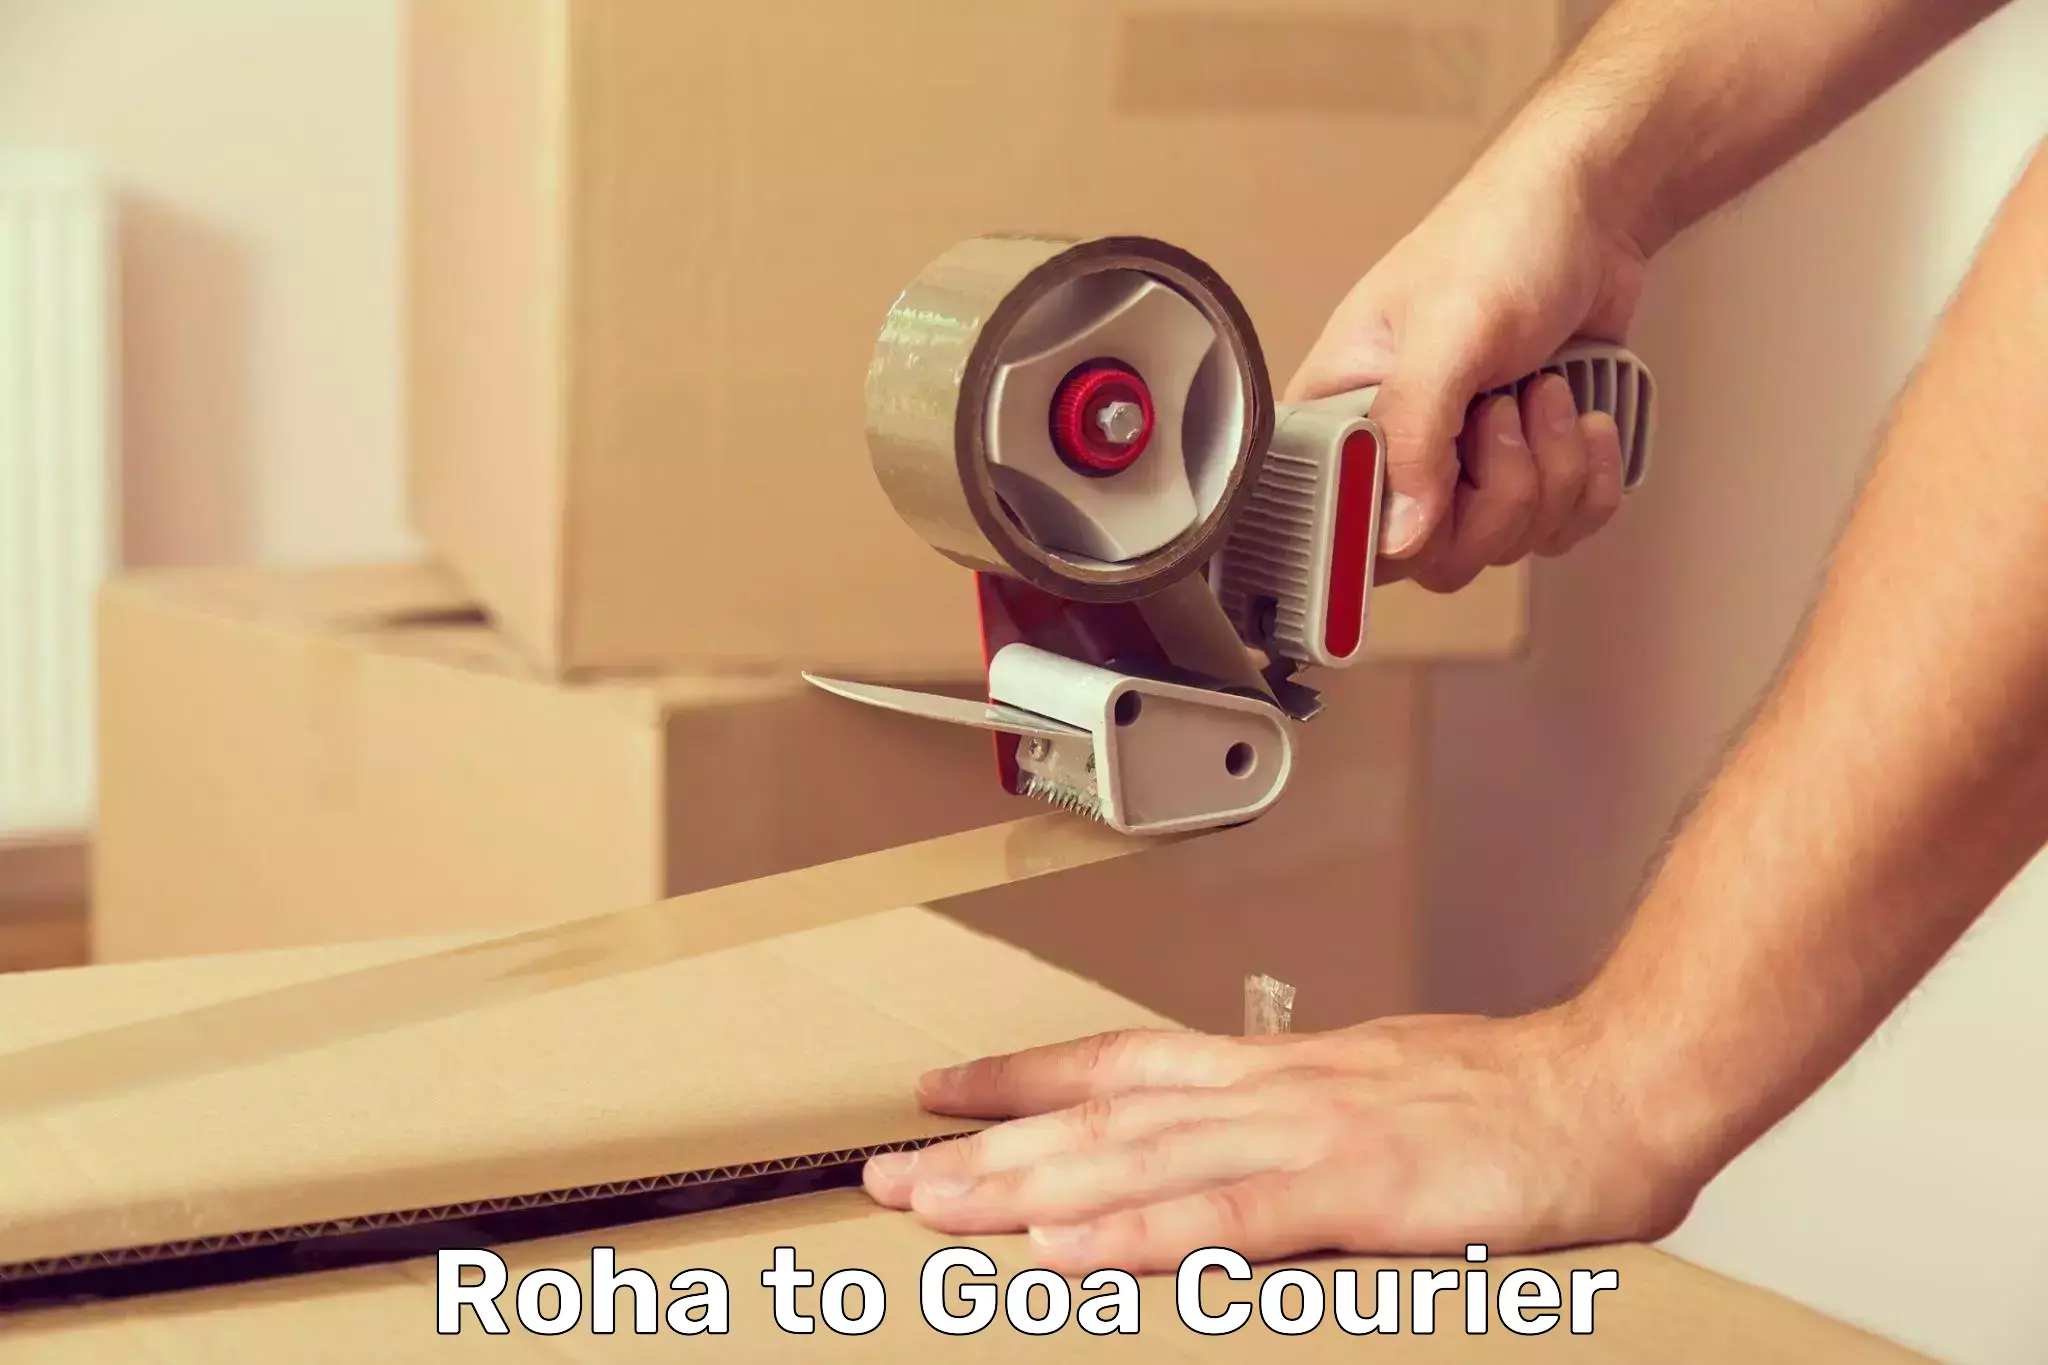 Digital courier platforms Roha to Goa